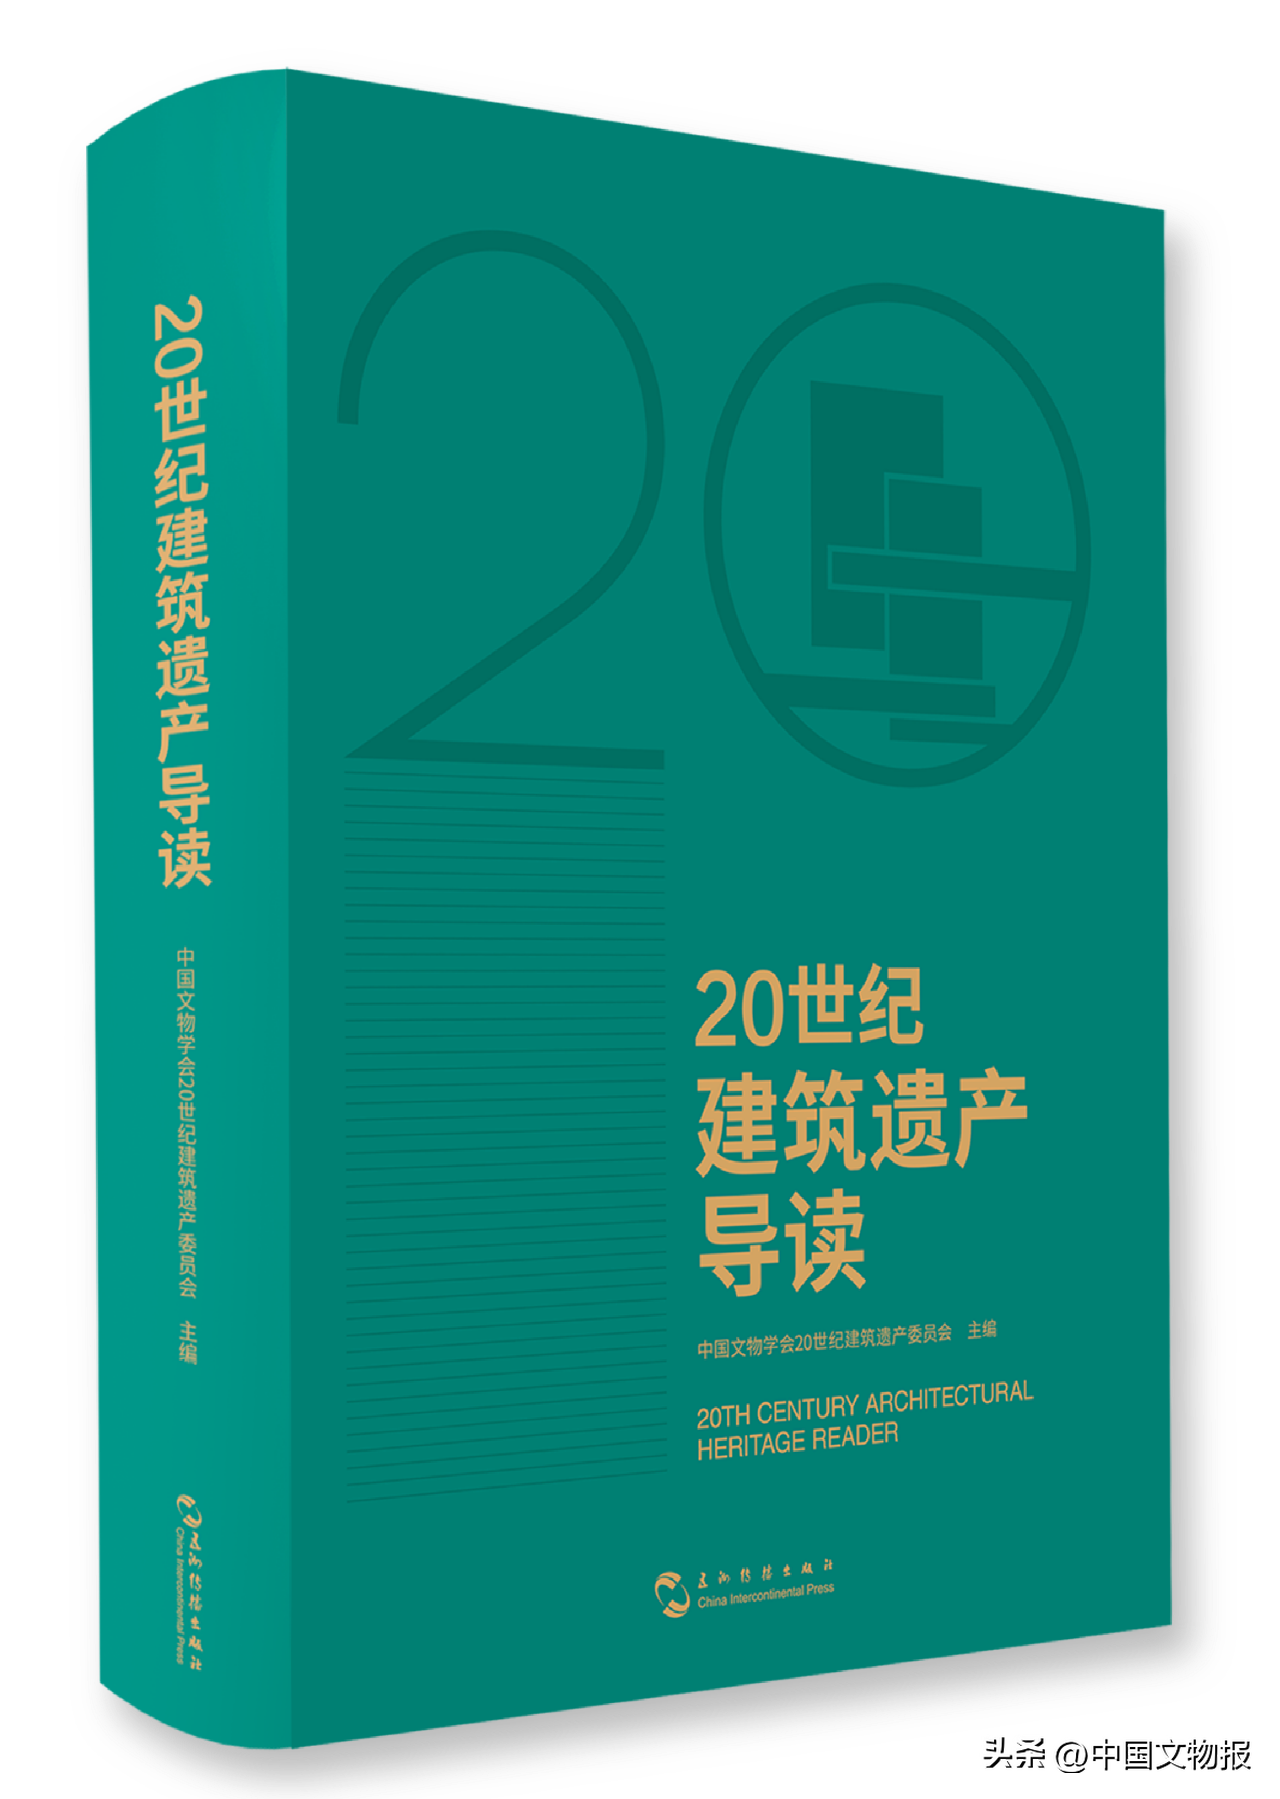 《20世纪建筑遗产导读》新书分享会在北京举办